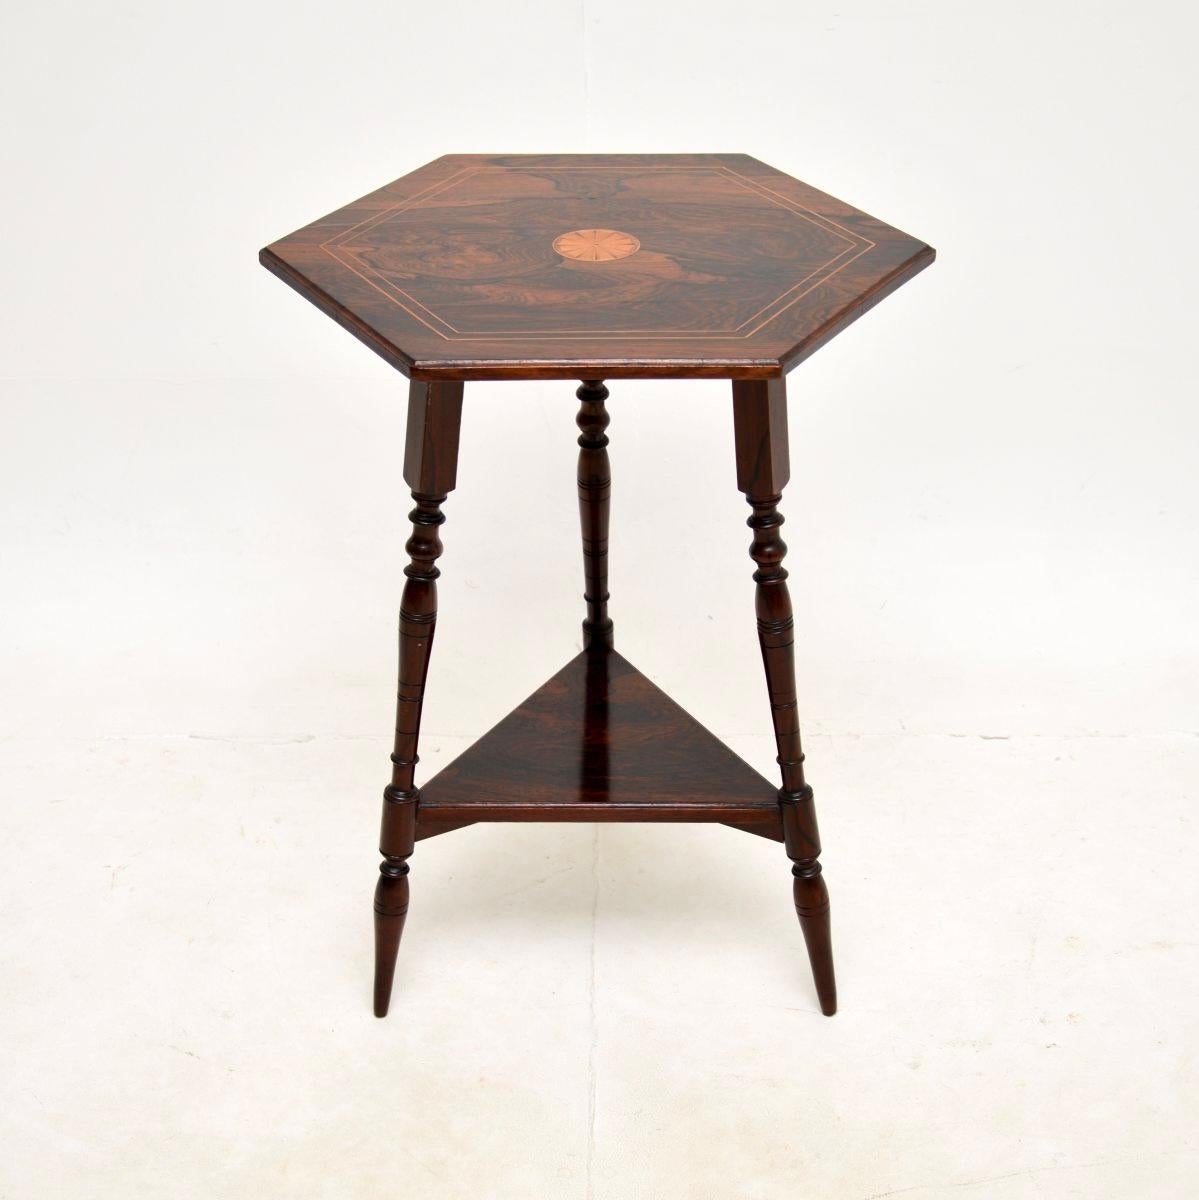 Une très belle table d'appoint victorienne marquetée. Fabriqué en Angleterre, il date d'environ la période 1890-1900.

Il est d'une très grande qualité et d'une taille très utile. Les trois pieds sont magnifiquement tournés et soutiennent un plateau